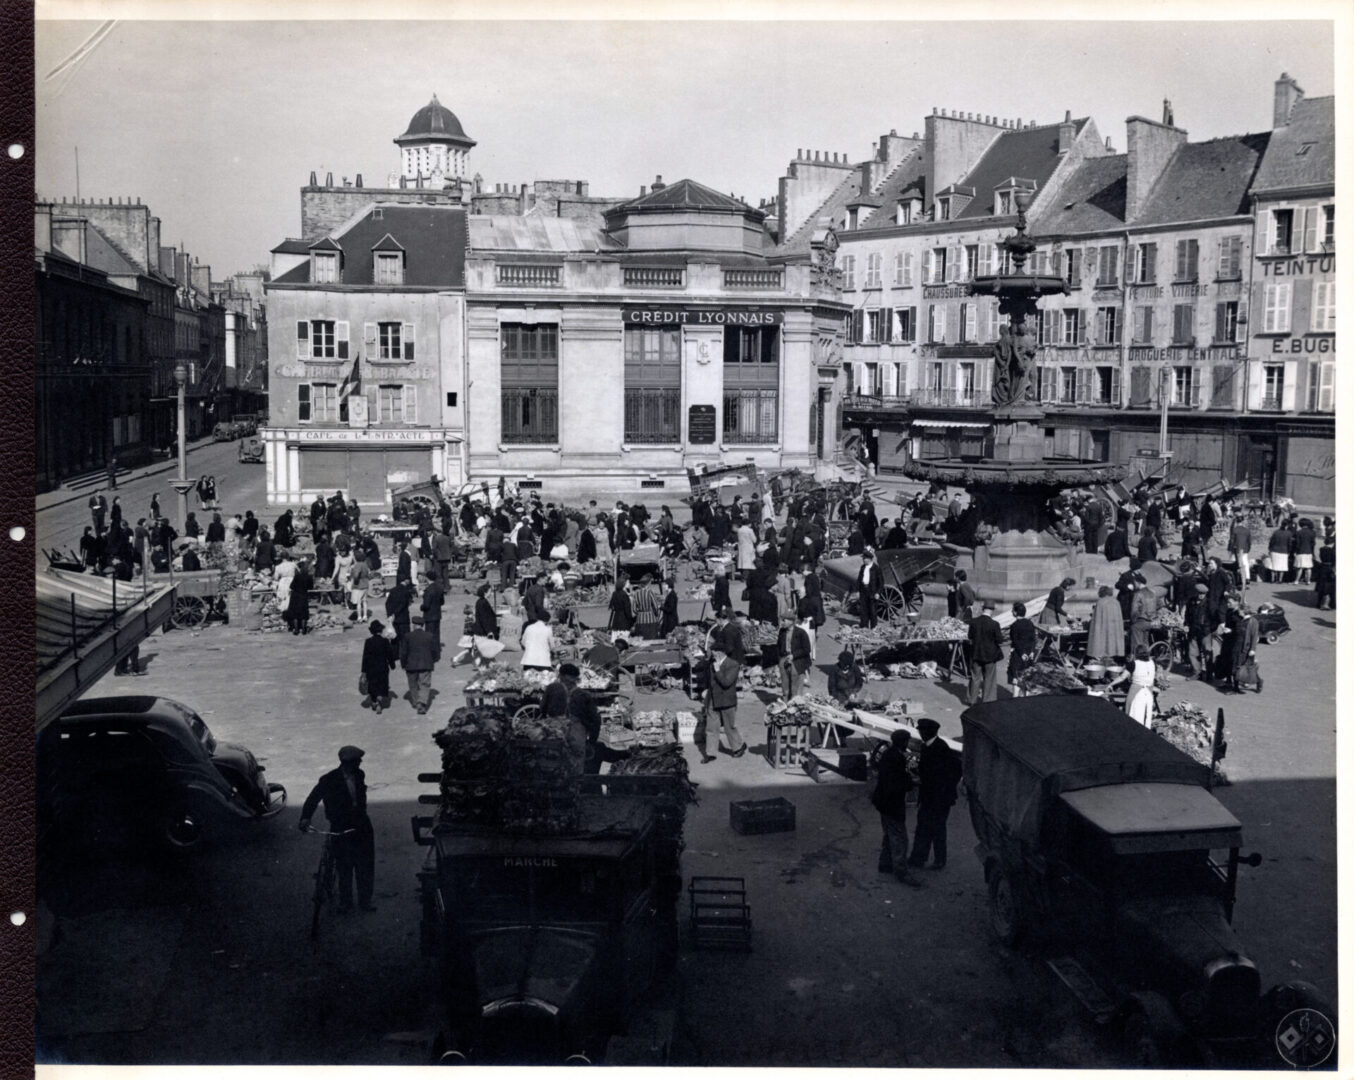 Place De La Republique, the market area of Cherbourg